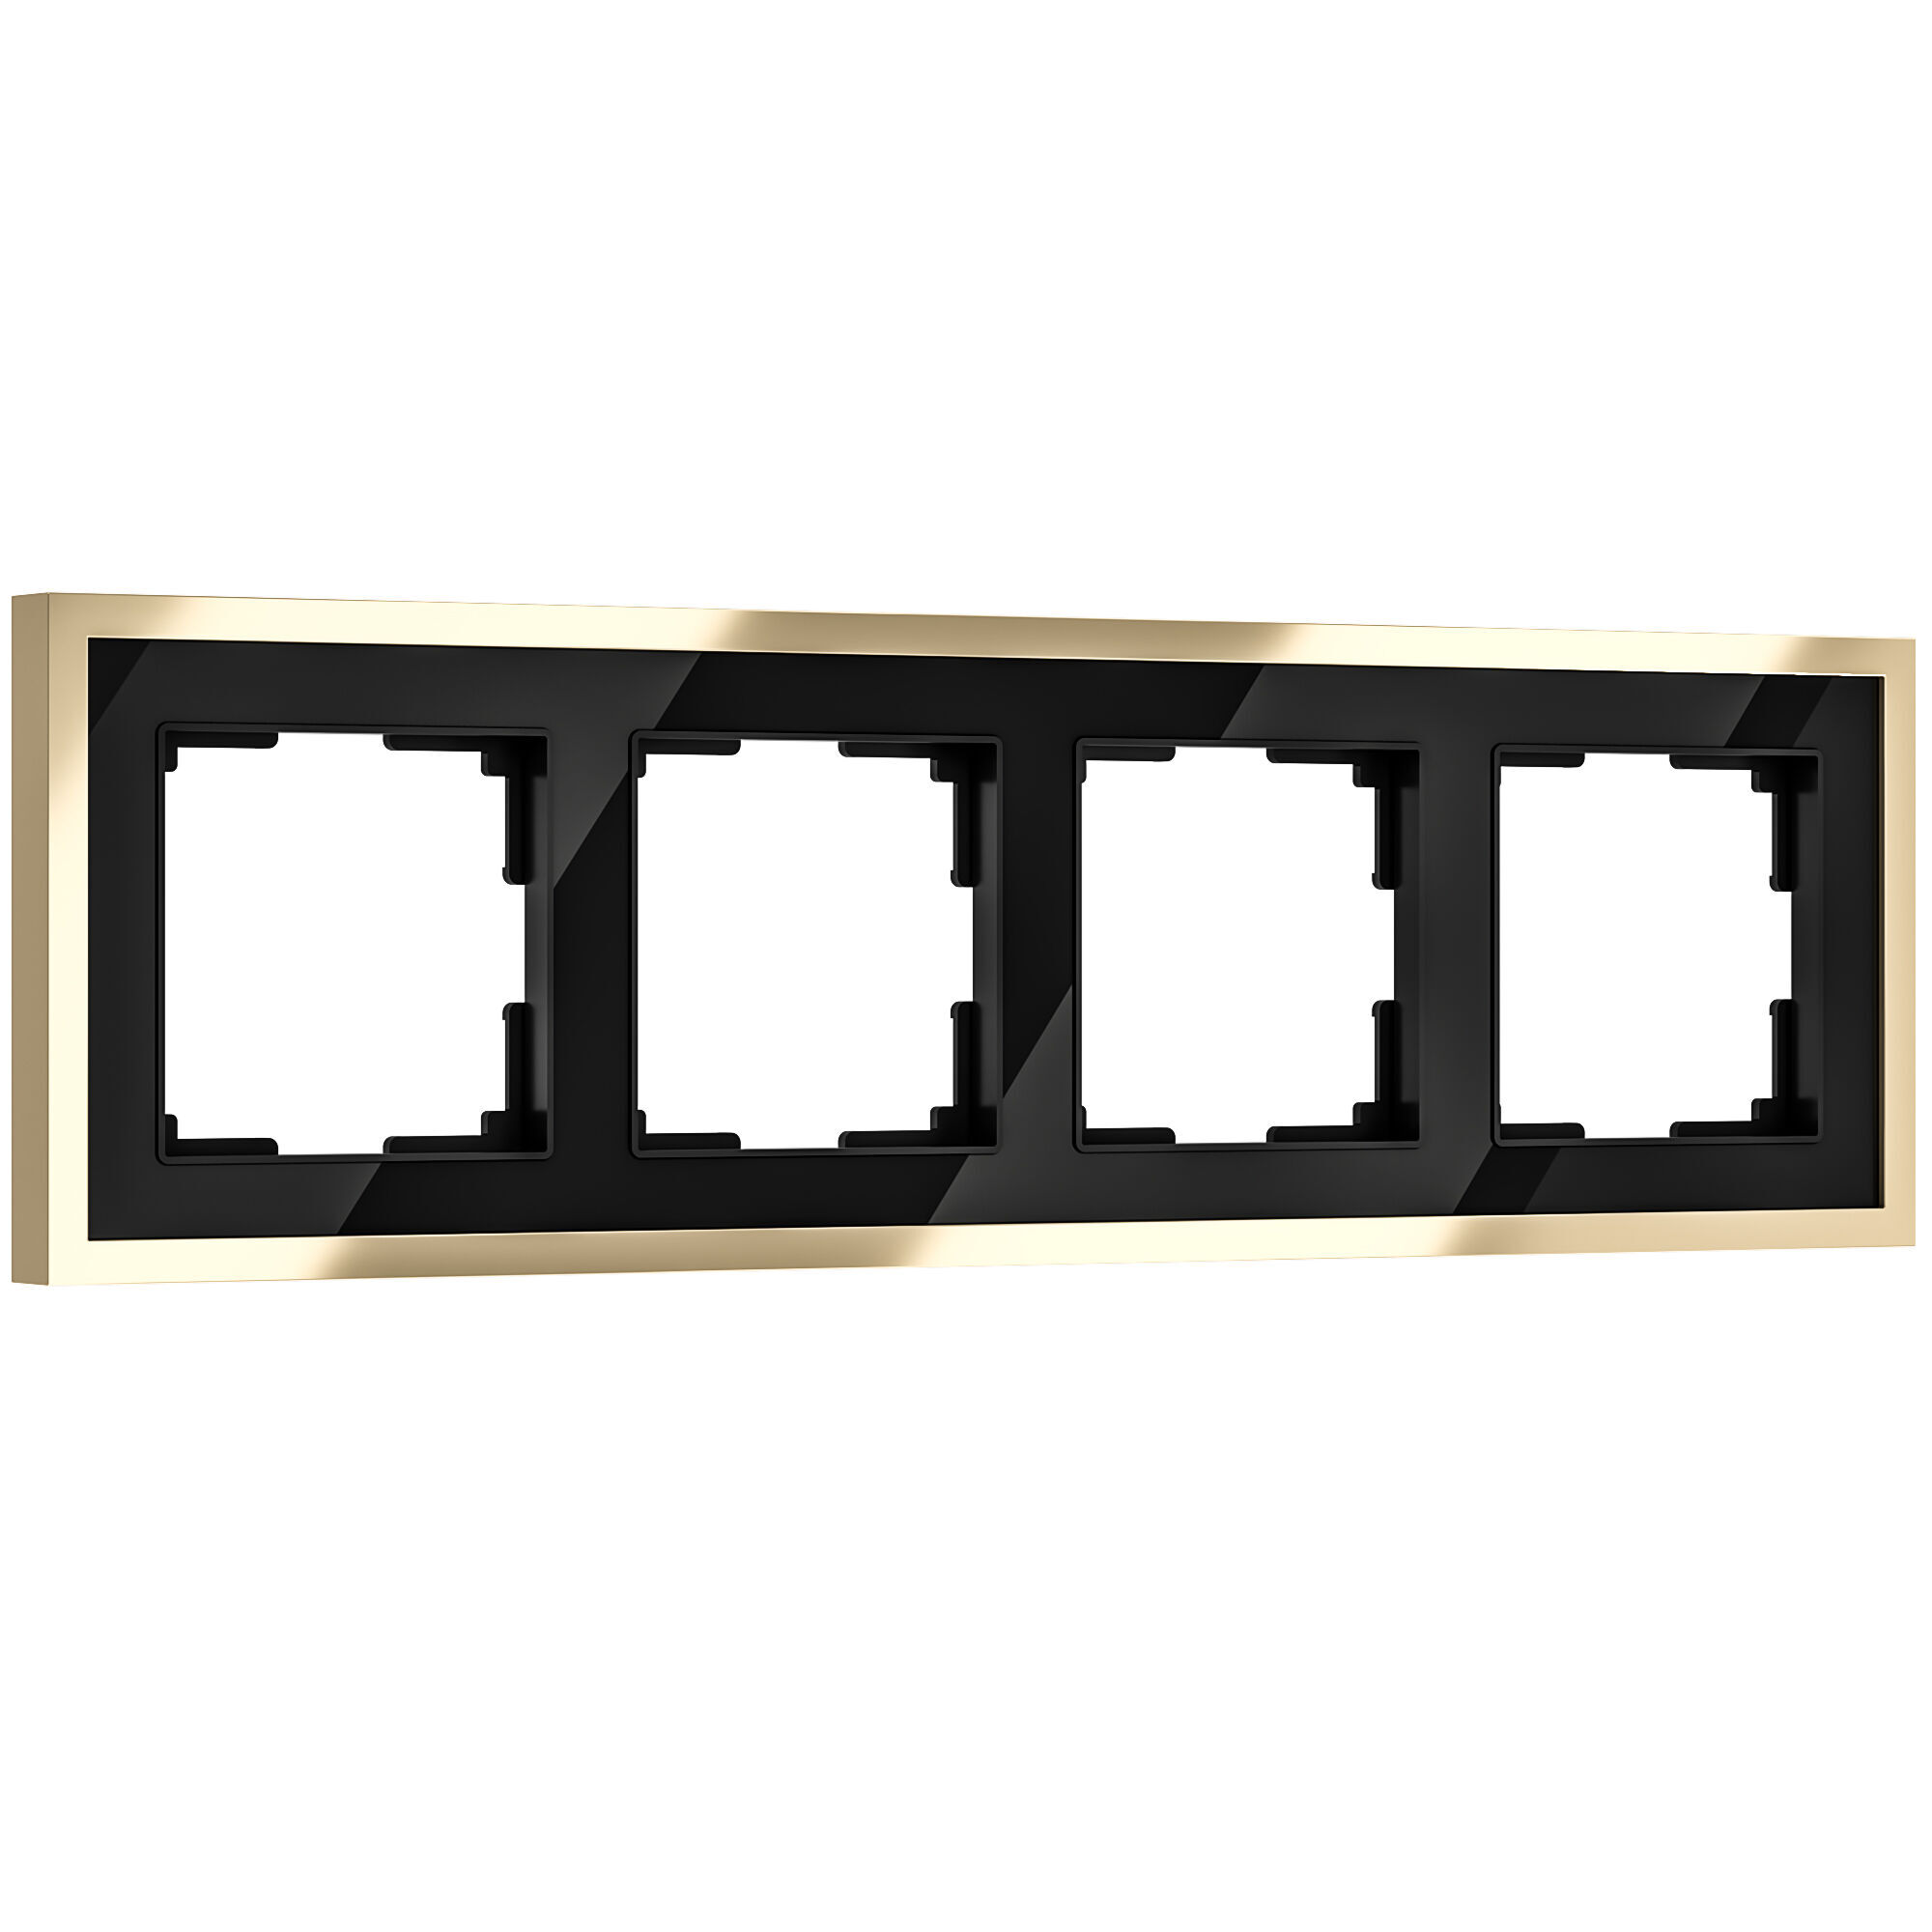 Рамка на 4 поста Werkel Baguette W0042852 черный и латунь для розетки и выключателя рамка на 4 поста werkel baguette w0042851 айвори и латунь для розетки и выключателя